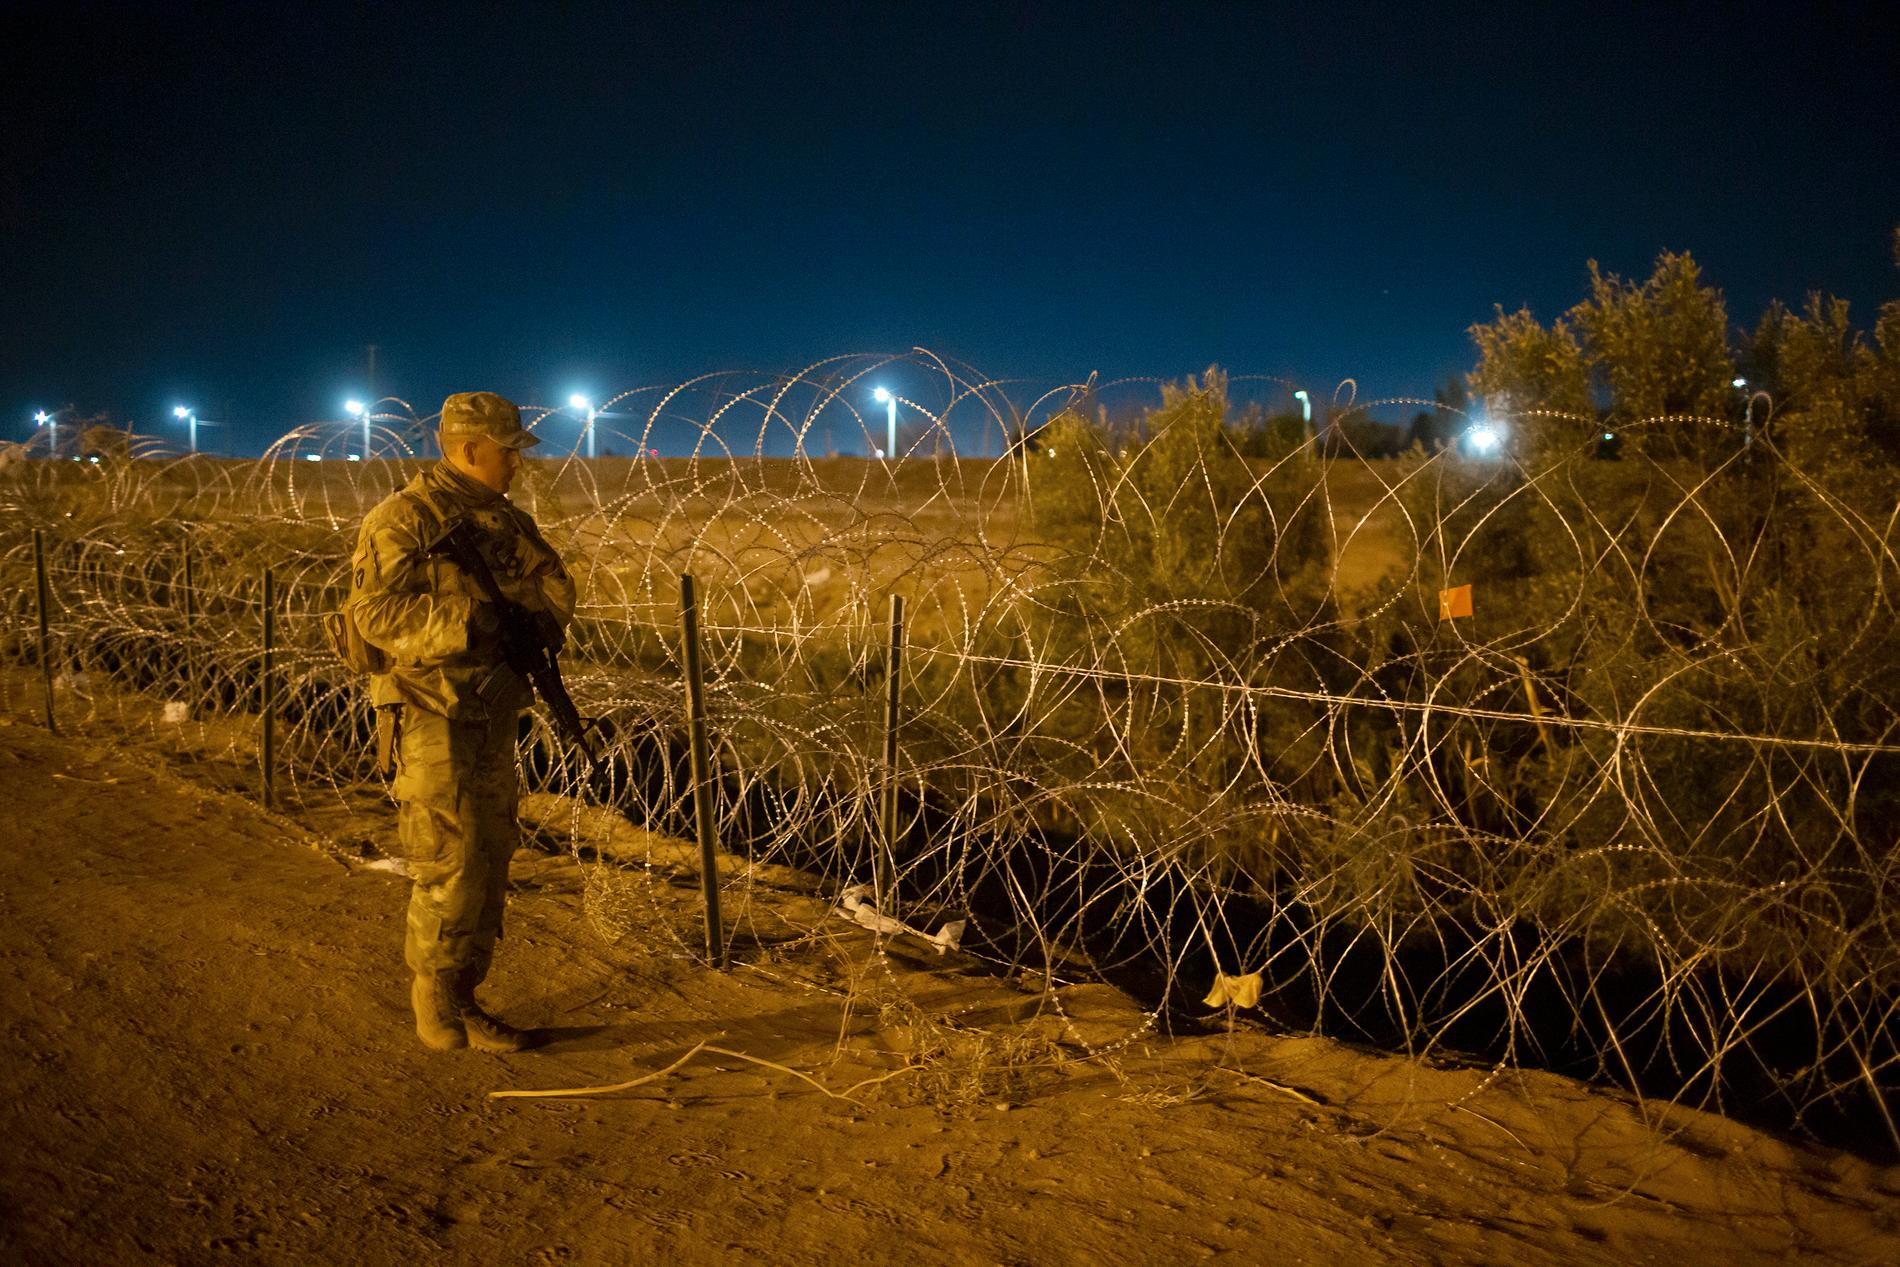 En gränsvakt patrullerar vid ett taggtrådsstängsel nära gränsfloden Rio Grande i Texas.